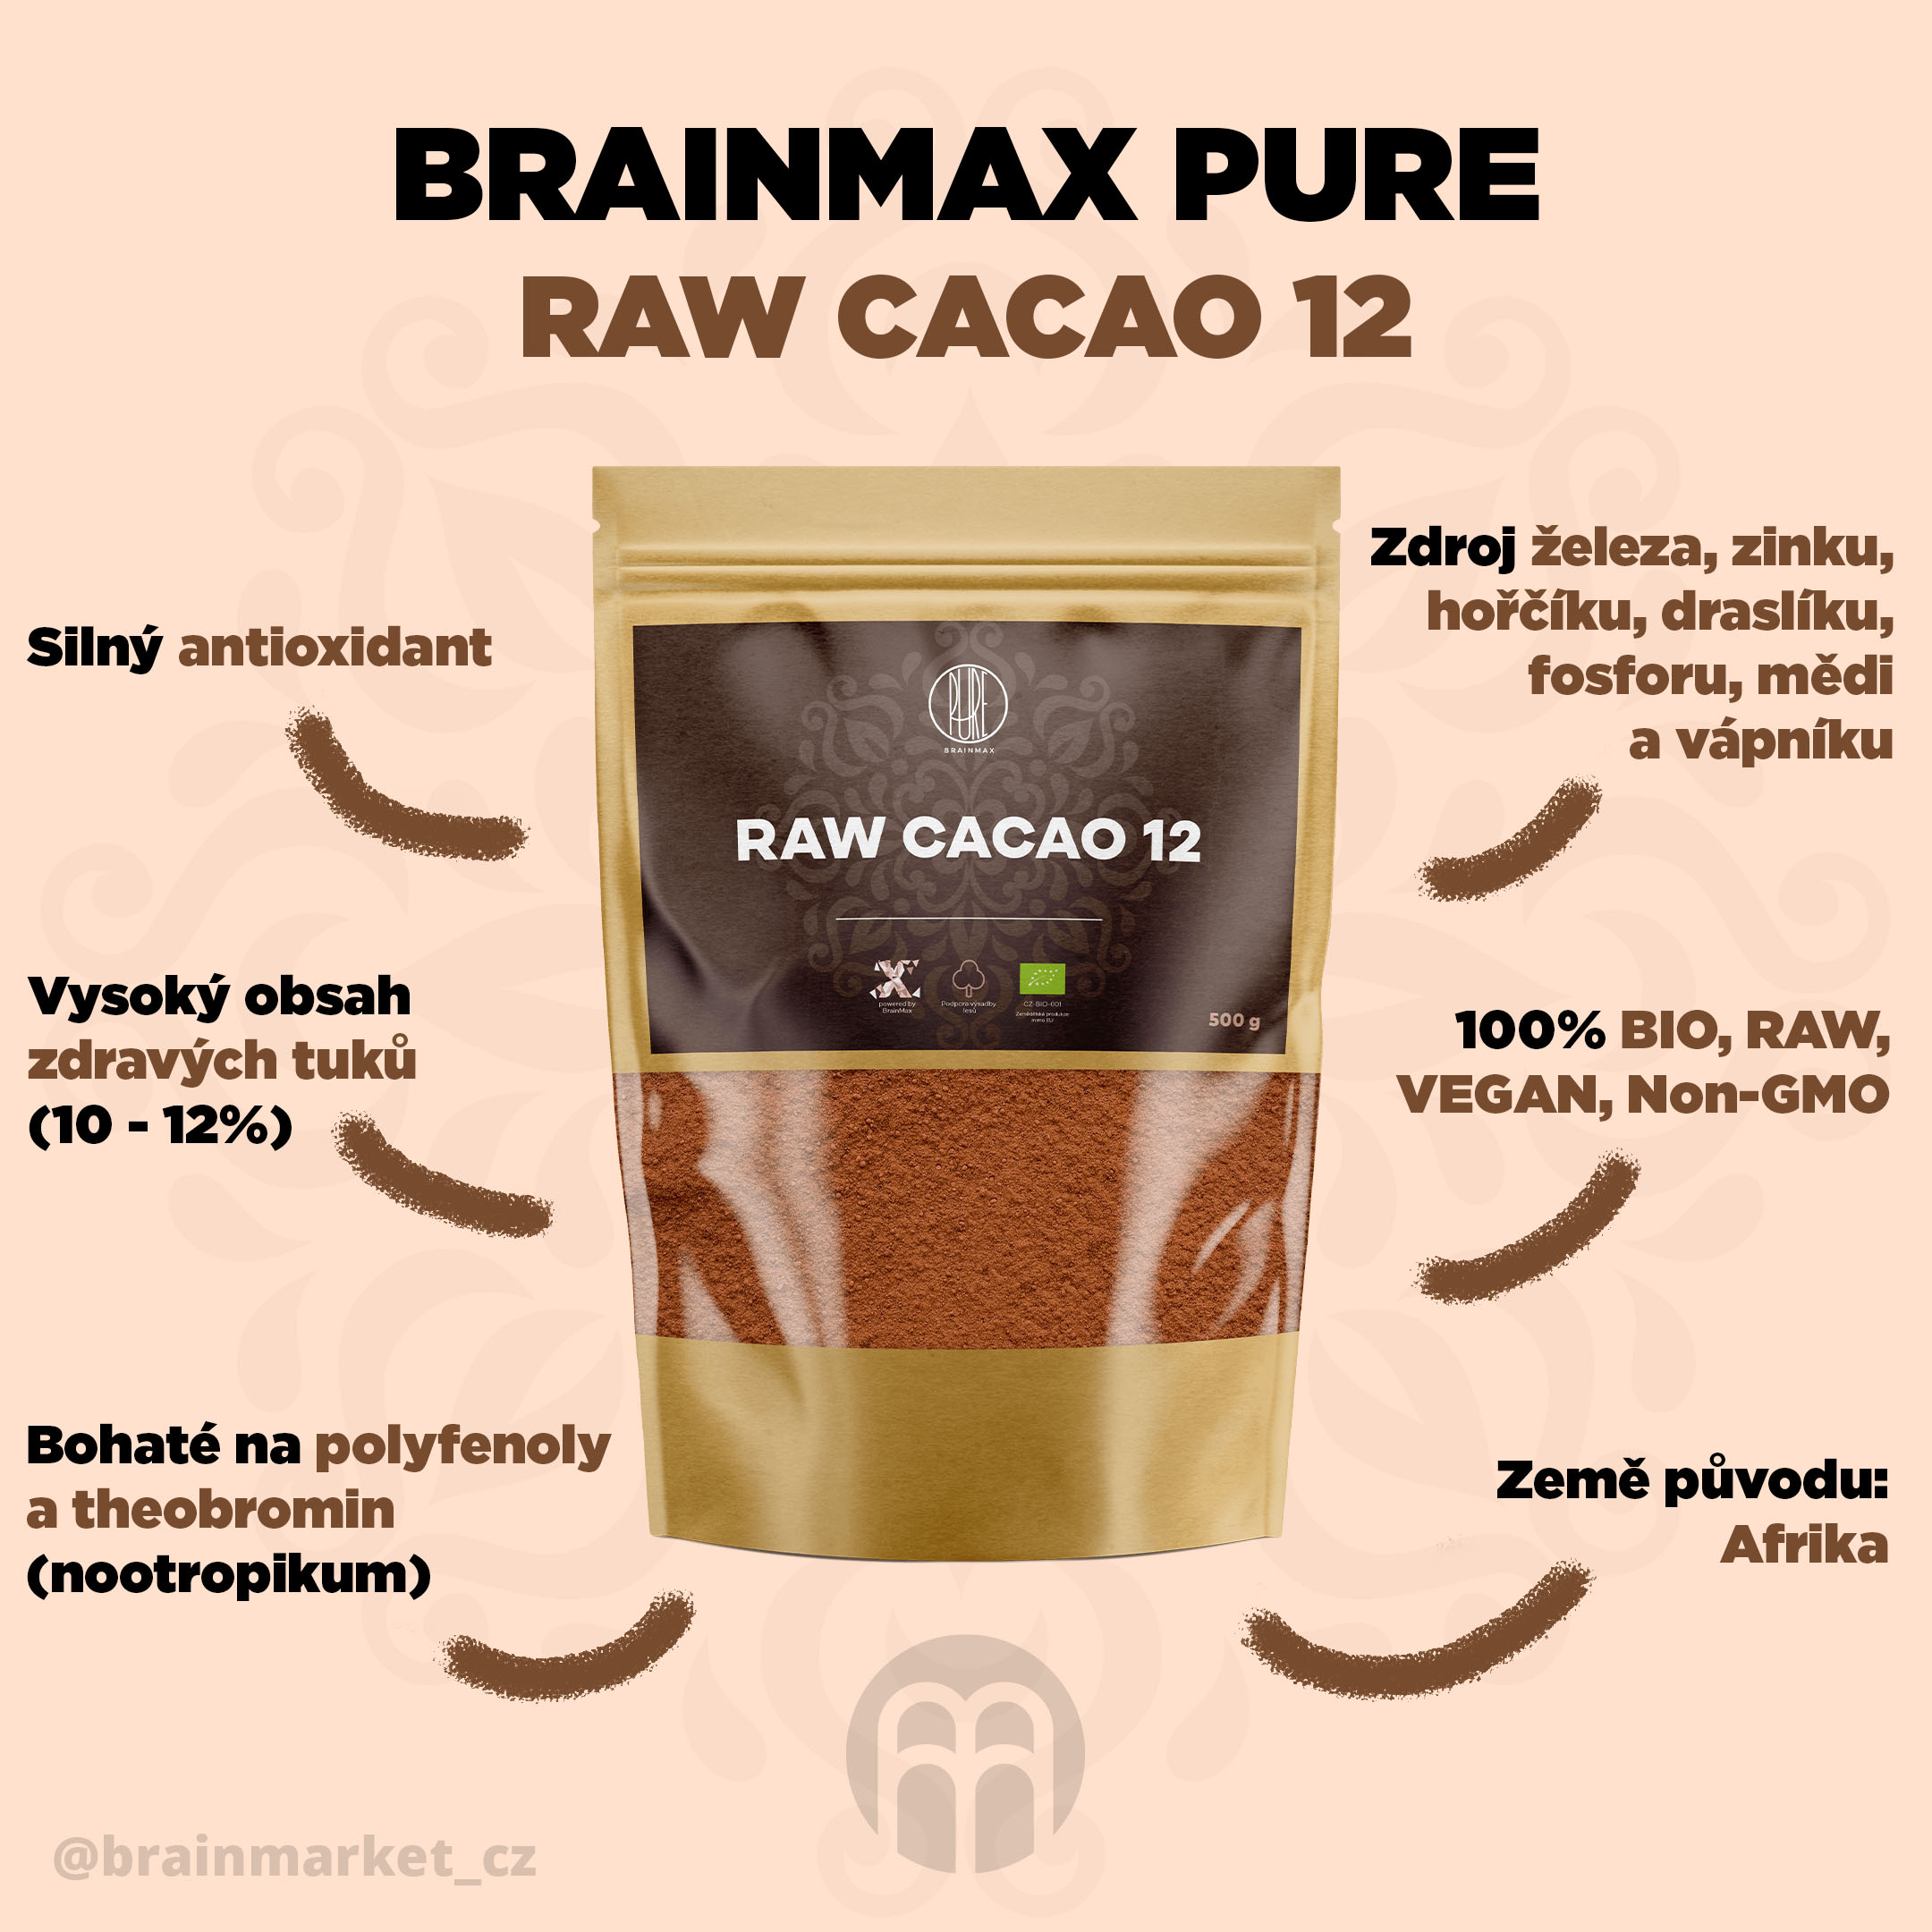 brainmax pure cacao raw 12 500g infografika brainmarket CZ